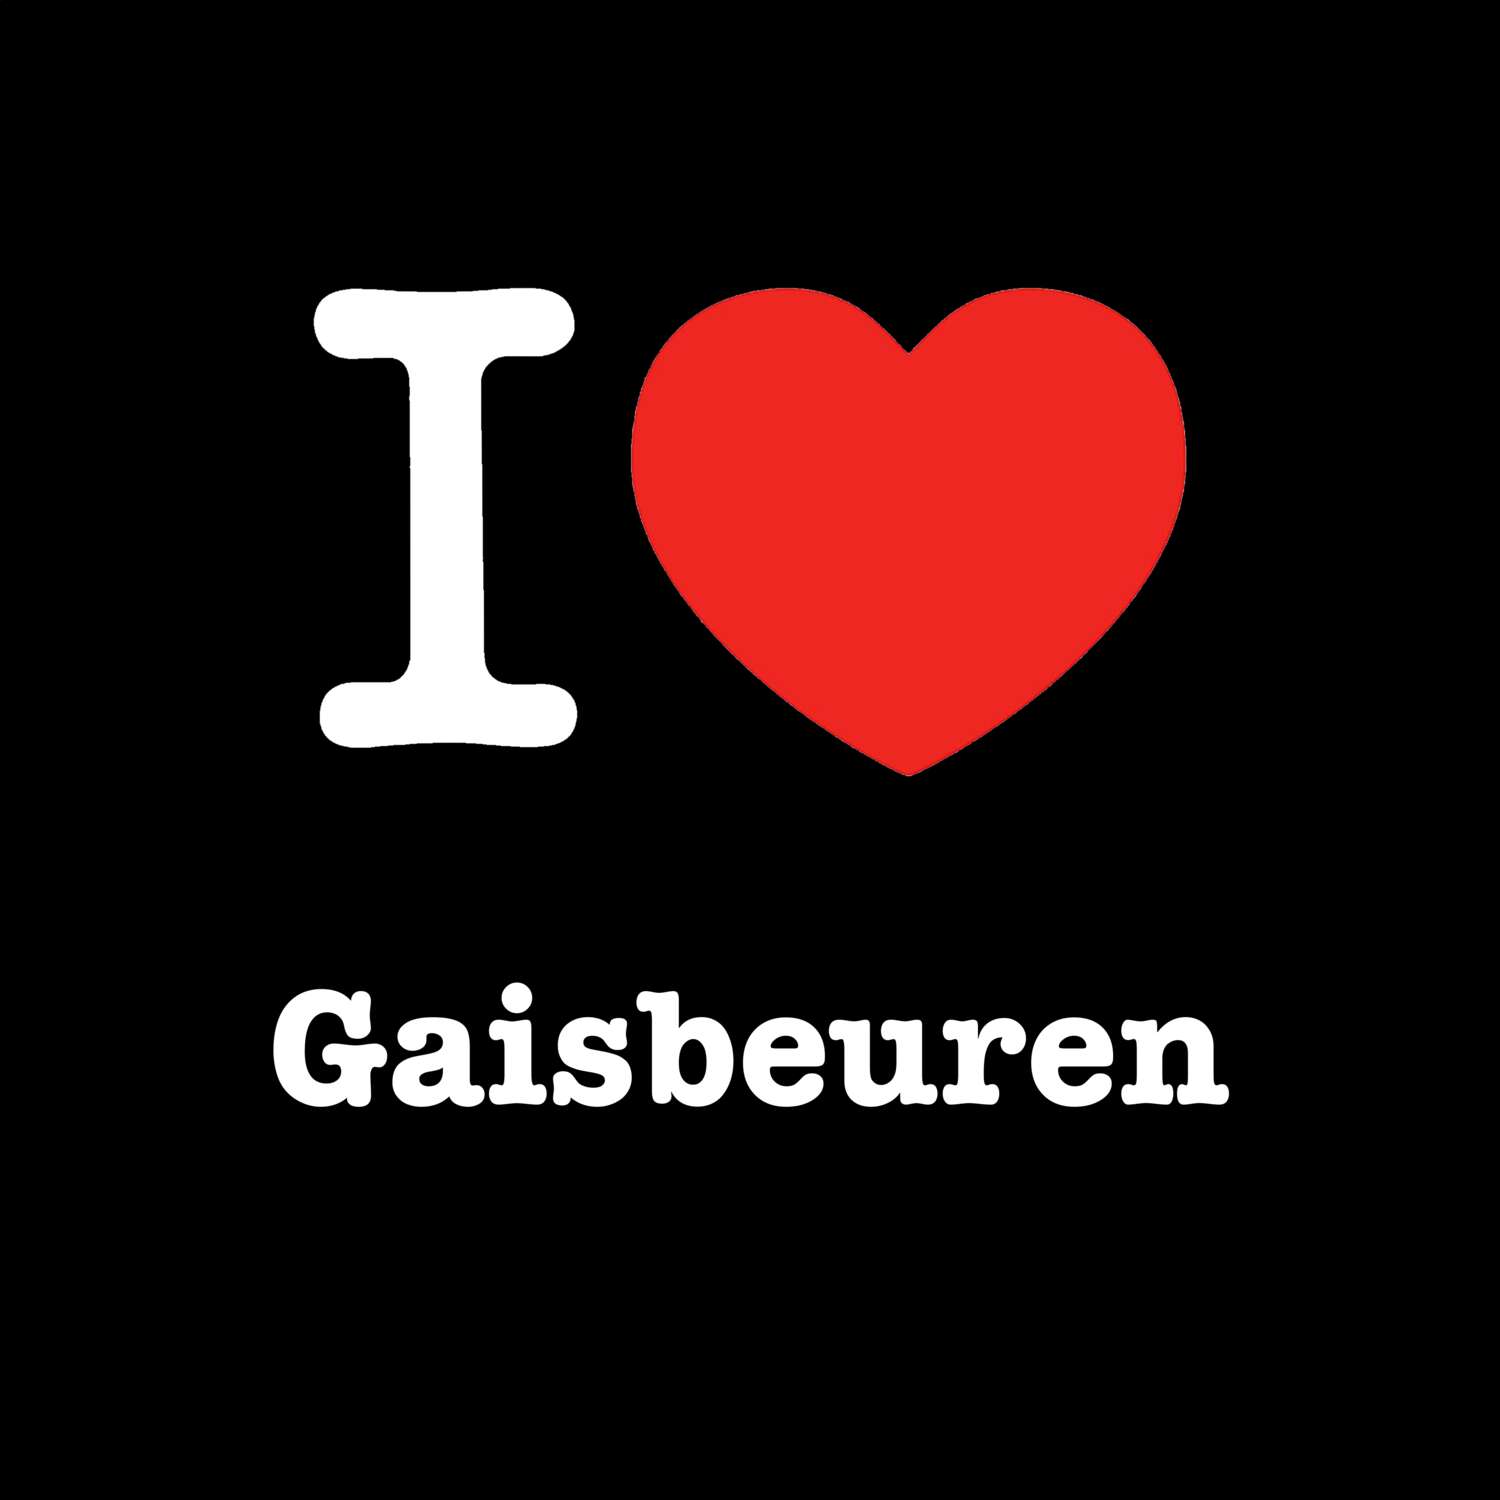 Gaisbeuren T-Shirt »I love«